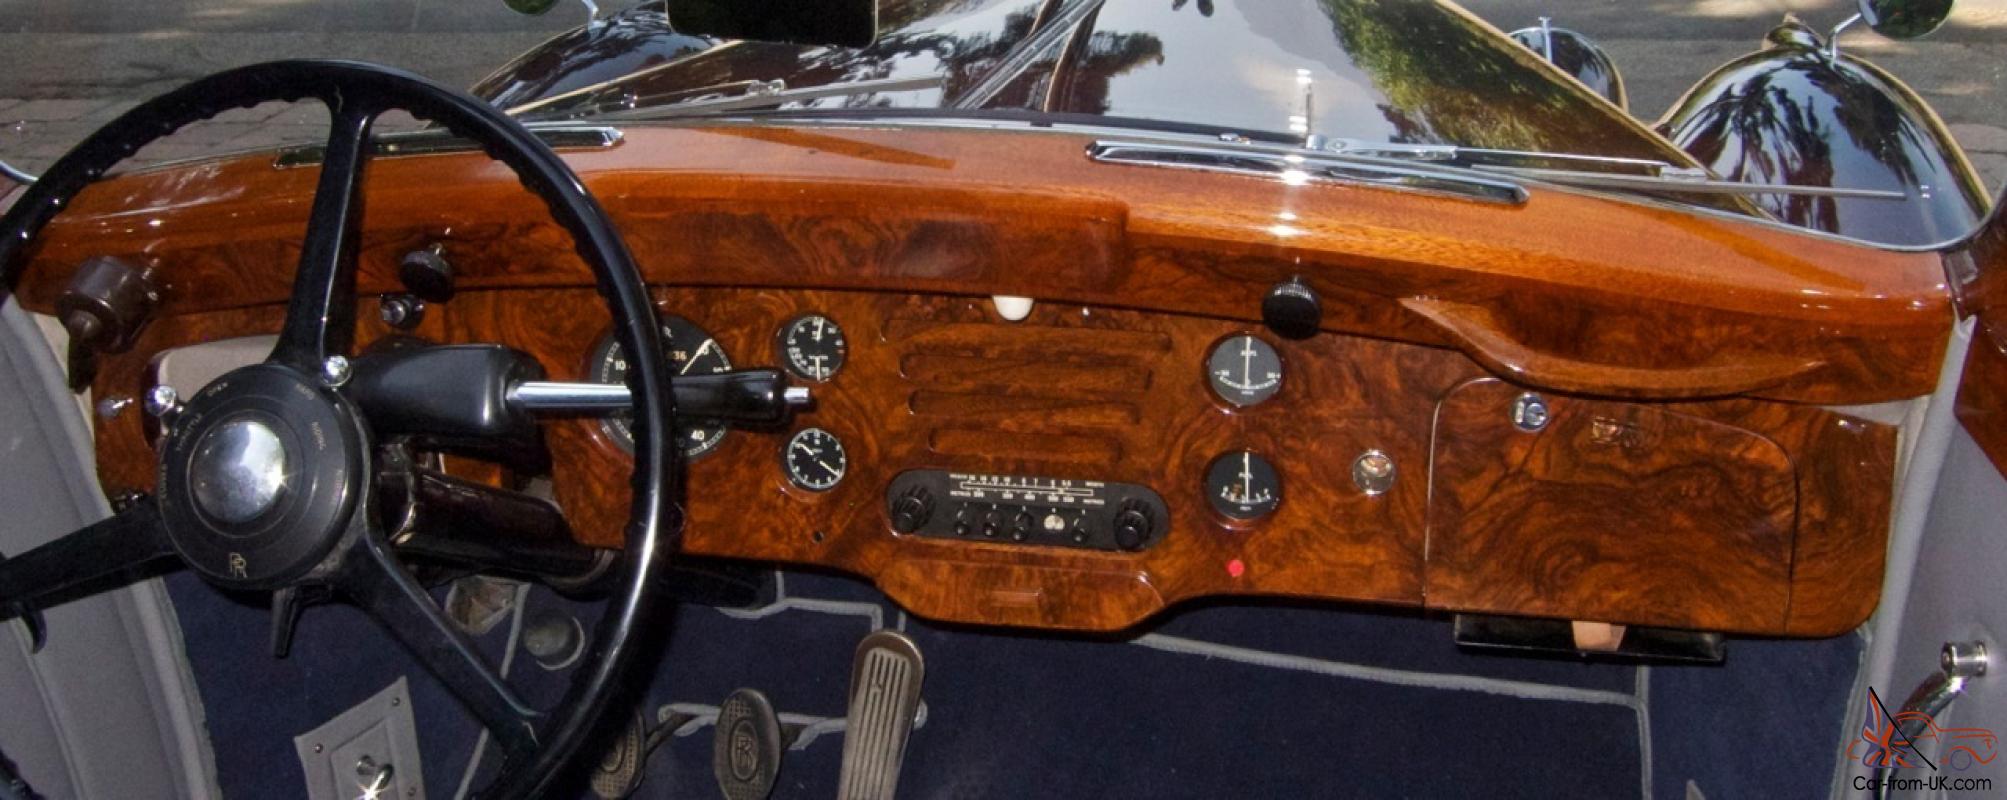 1952 Rolls Royce Silver Dawn Drophead